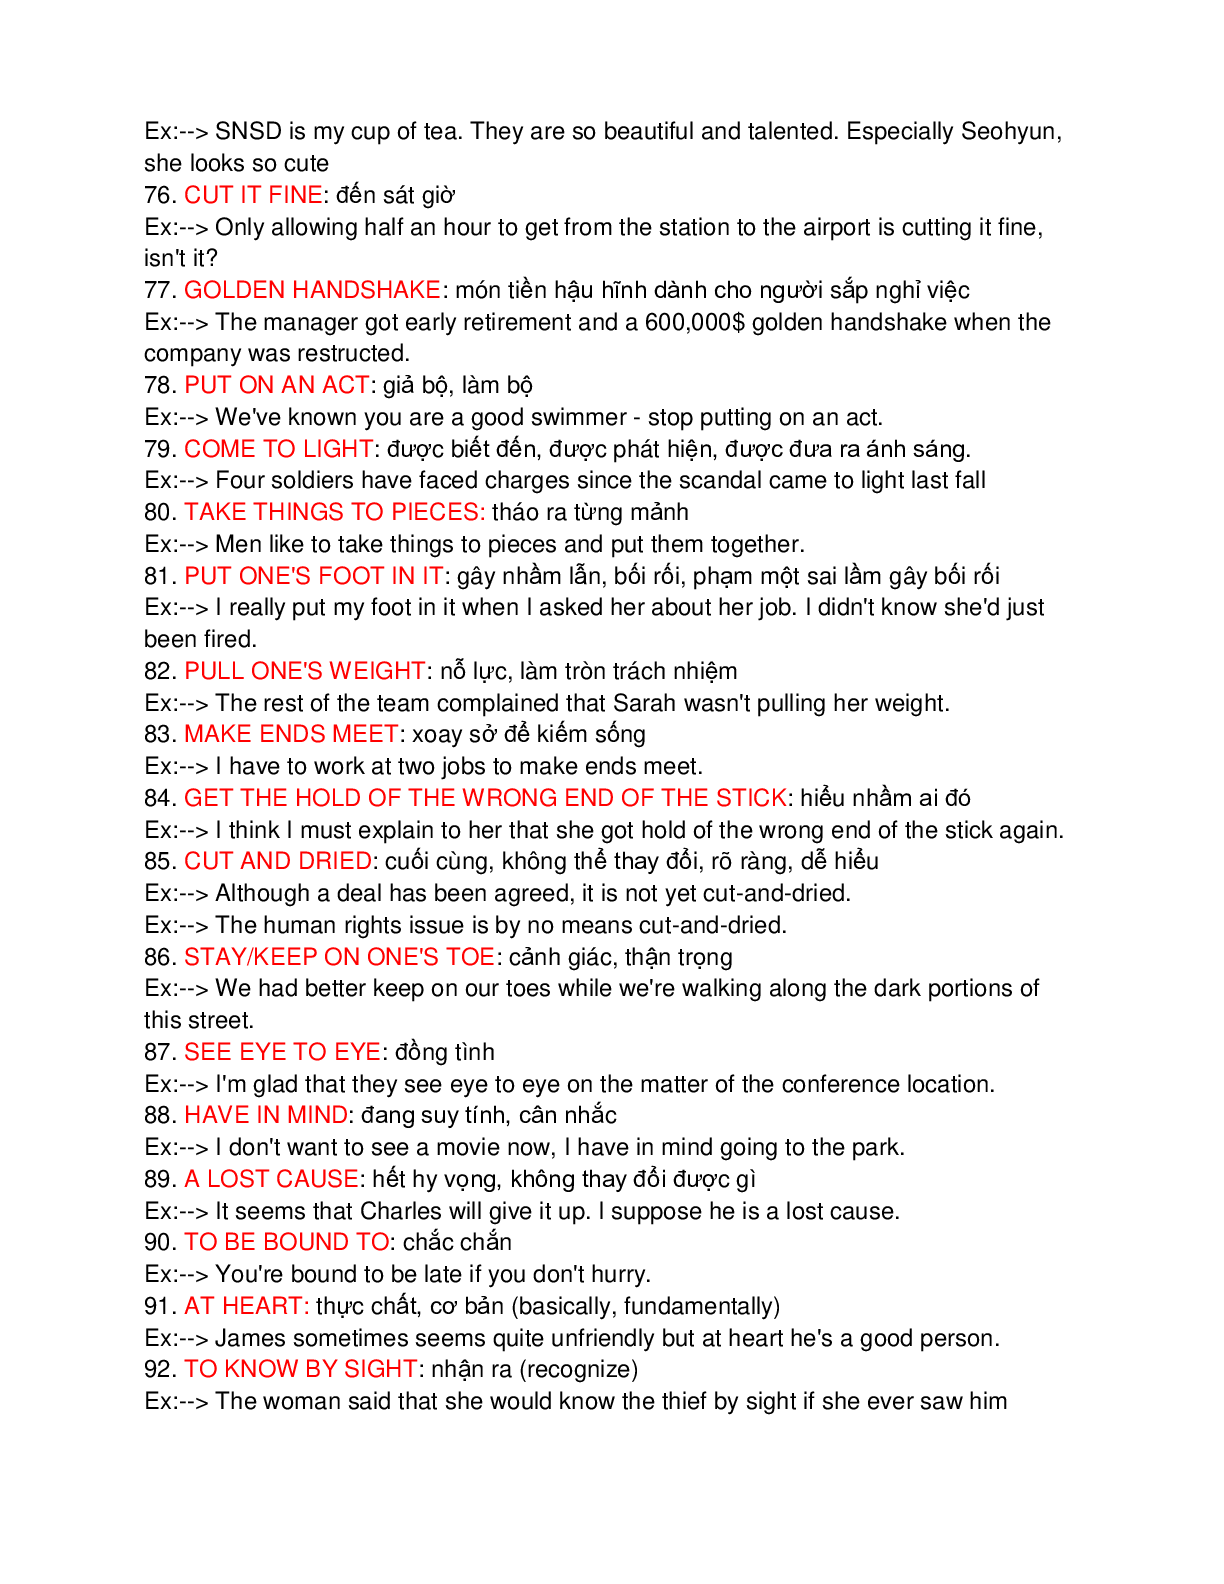 100 idioms quan trọng thường gặp trong đề thi đại học môn Tiếng Anh (trang 6)